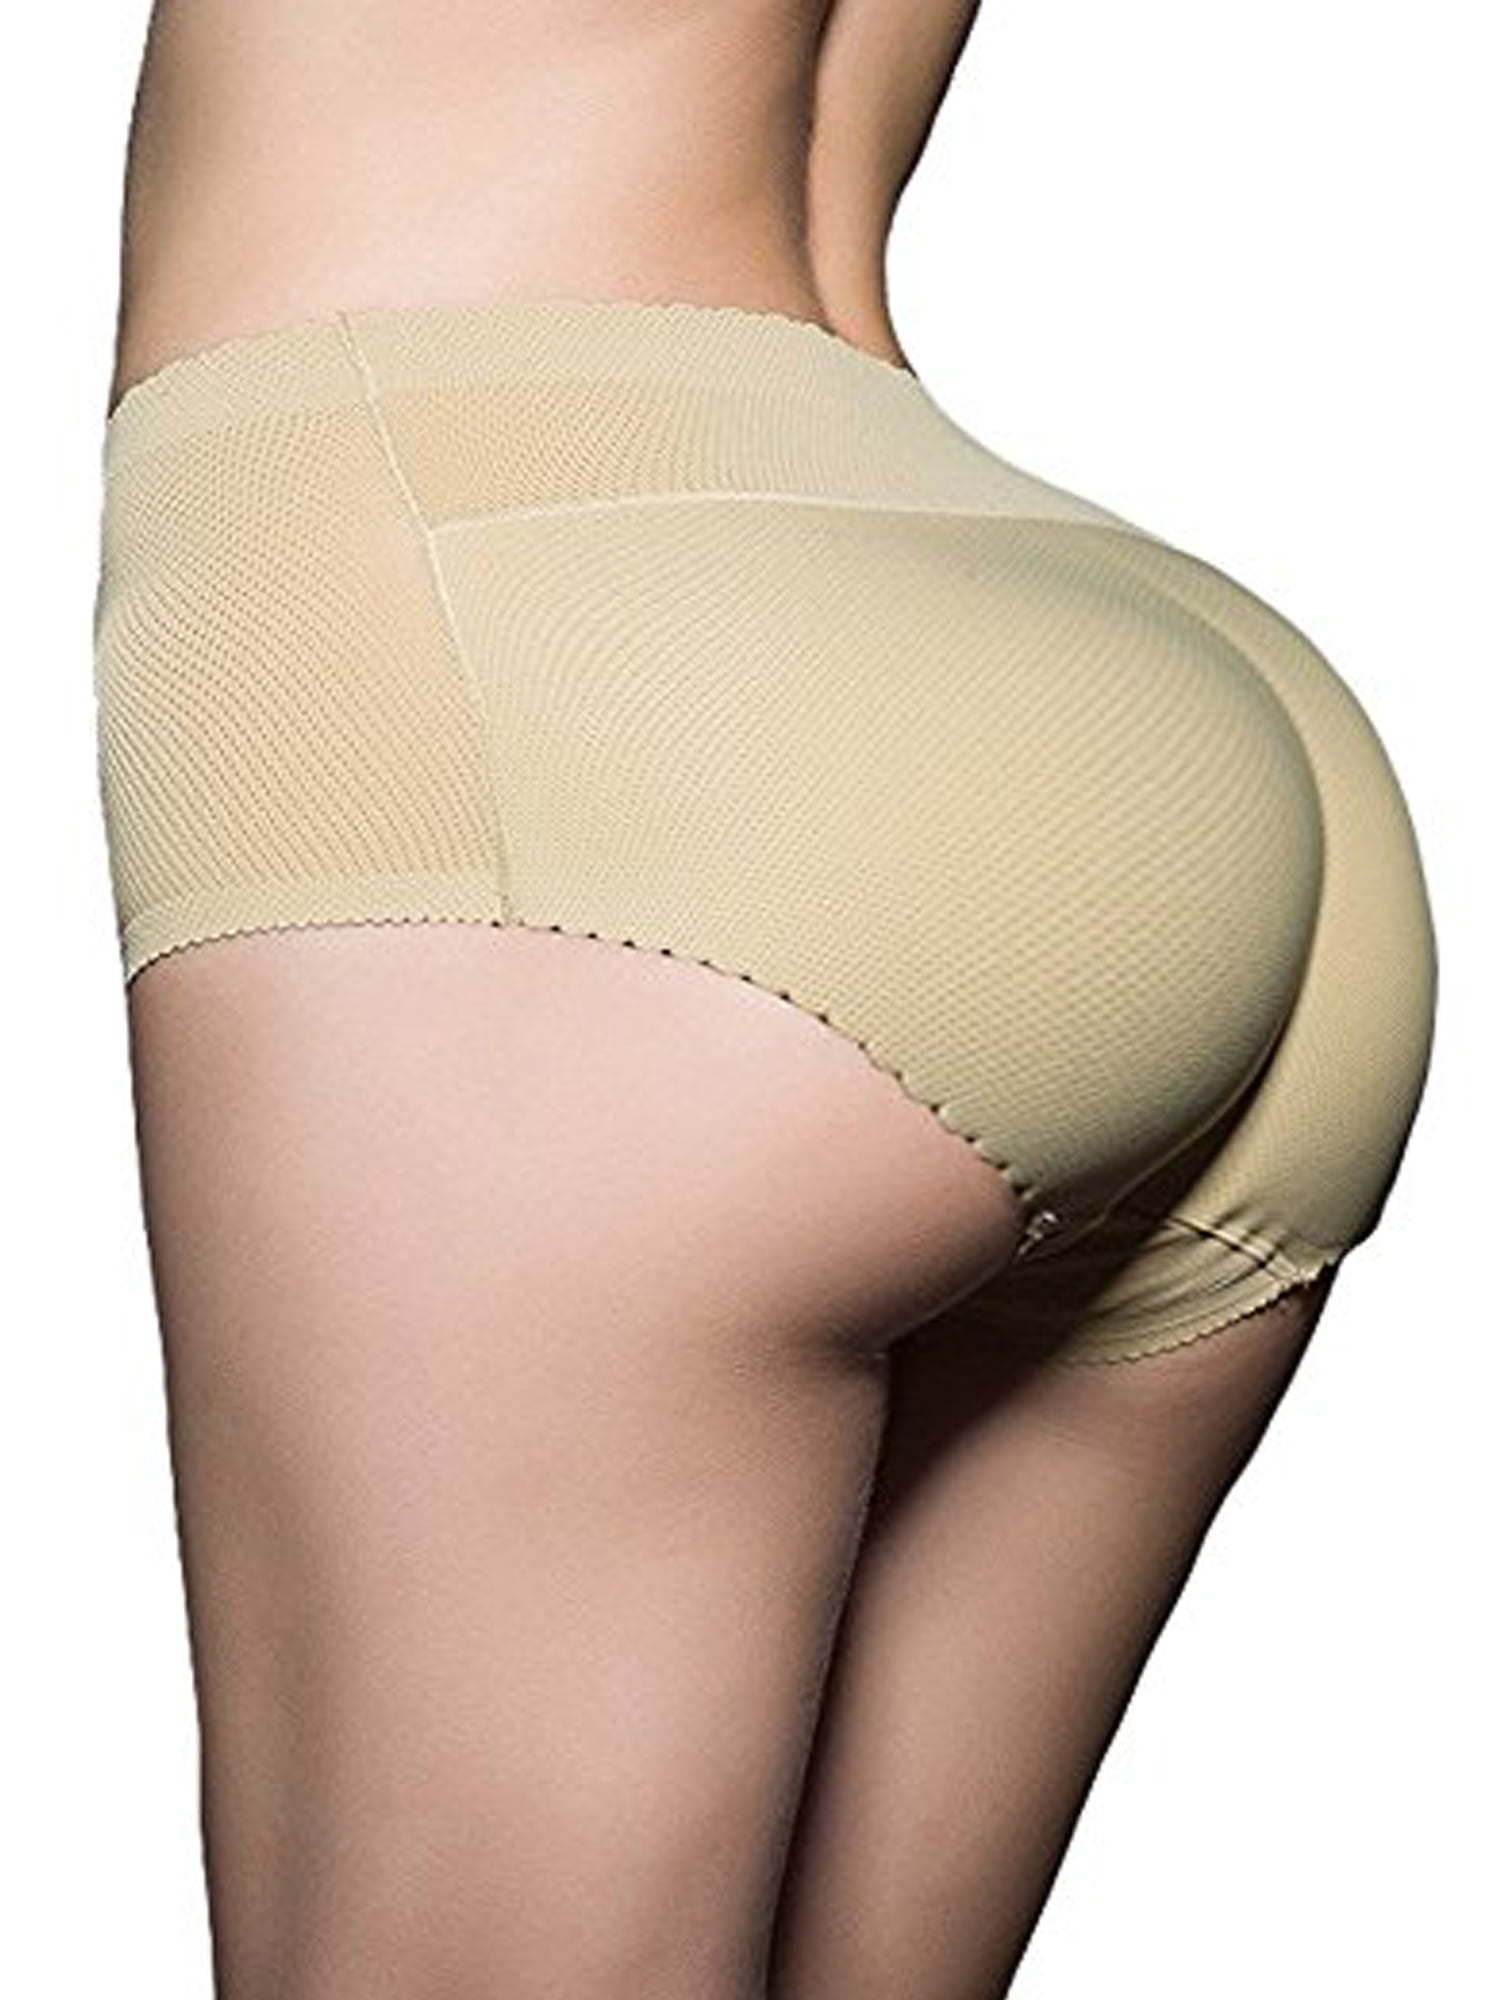 Lelinta Butt Lifter Padded Panty Enhancing Body Shaper Brief for Women Seamless Underwear 